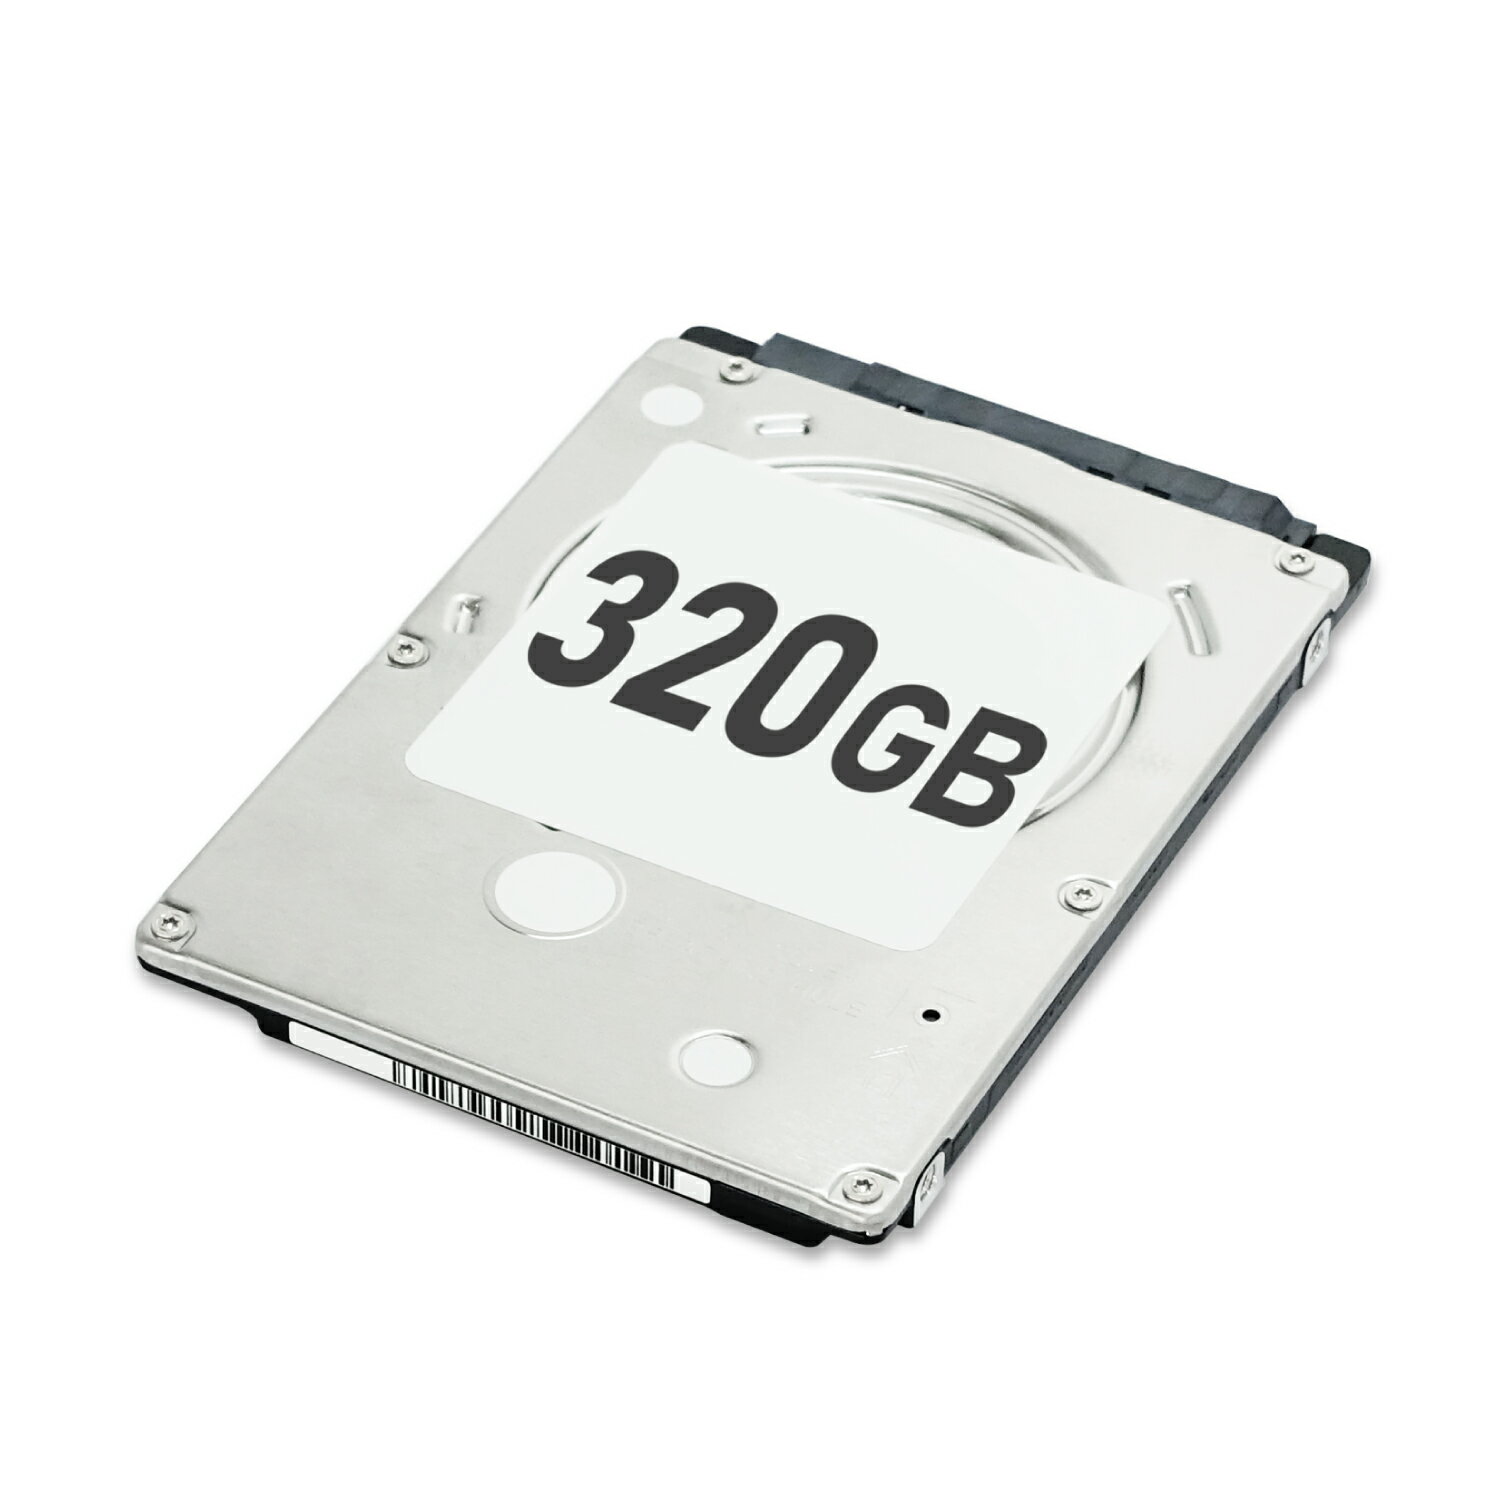 内蔵ハードディスク HDD 320GB 2.5inch SATA 7mm メーカーおまかせ 大手メーカー製（東芝、シーゲート、WD等） 動作確認済 中古 送料無料 | 内蔵HDD 内蔵ドライブ ストレージ パソコン PCパーツ ハードデスク ハードディスク